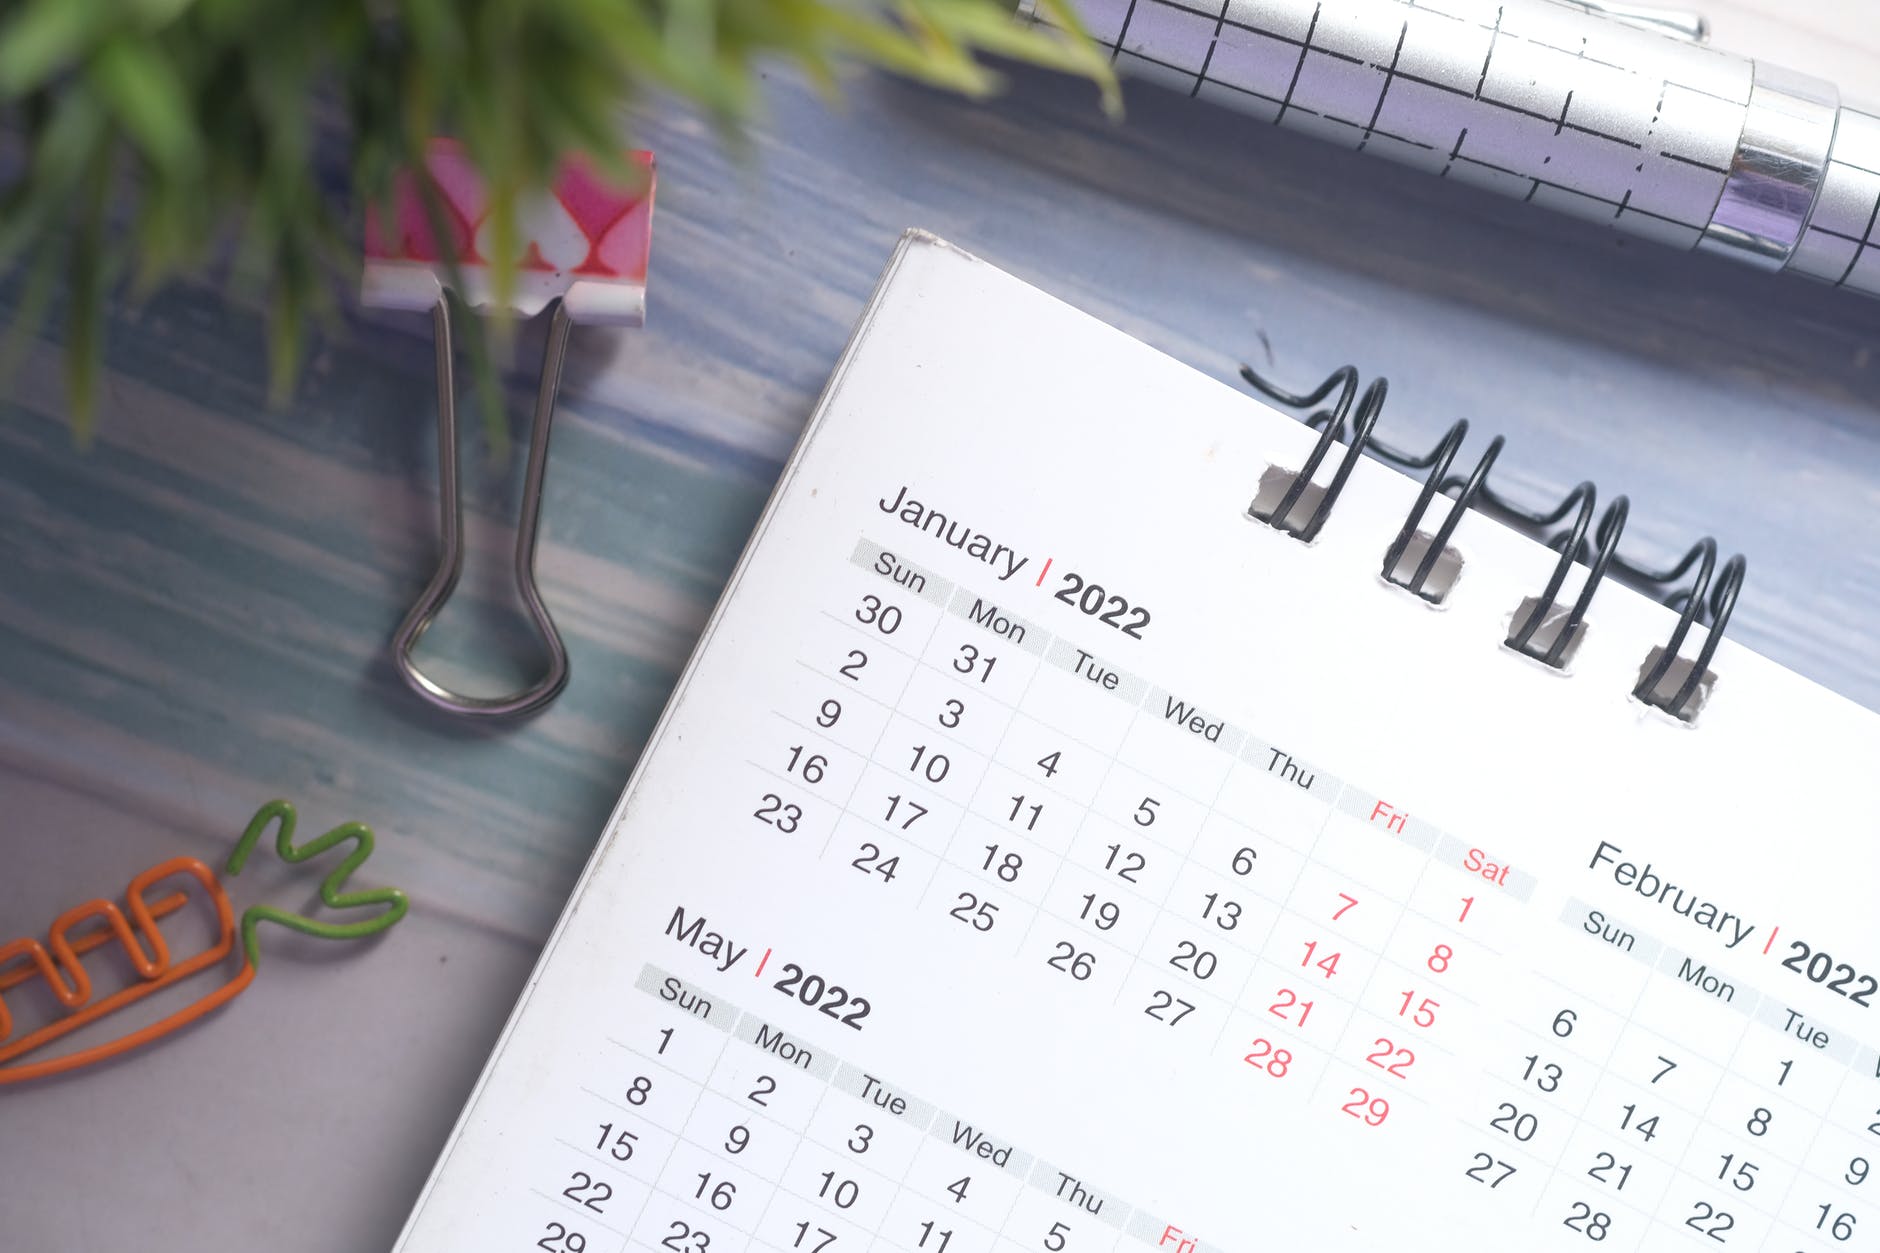 Confira todos os feriados nacionais de 2022, com 12 datas e programe-se para o ano que está chegando. Veja o calendário completo.